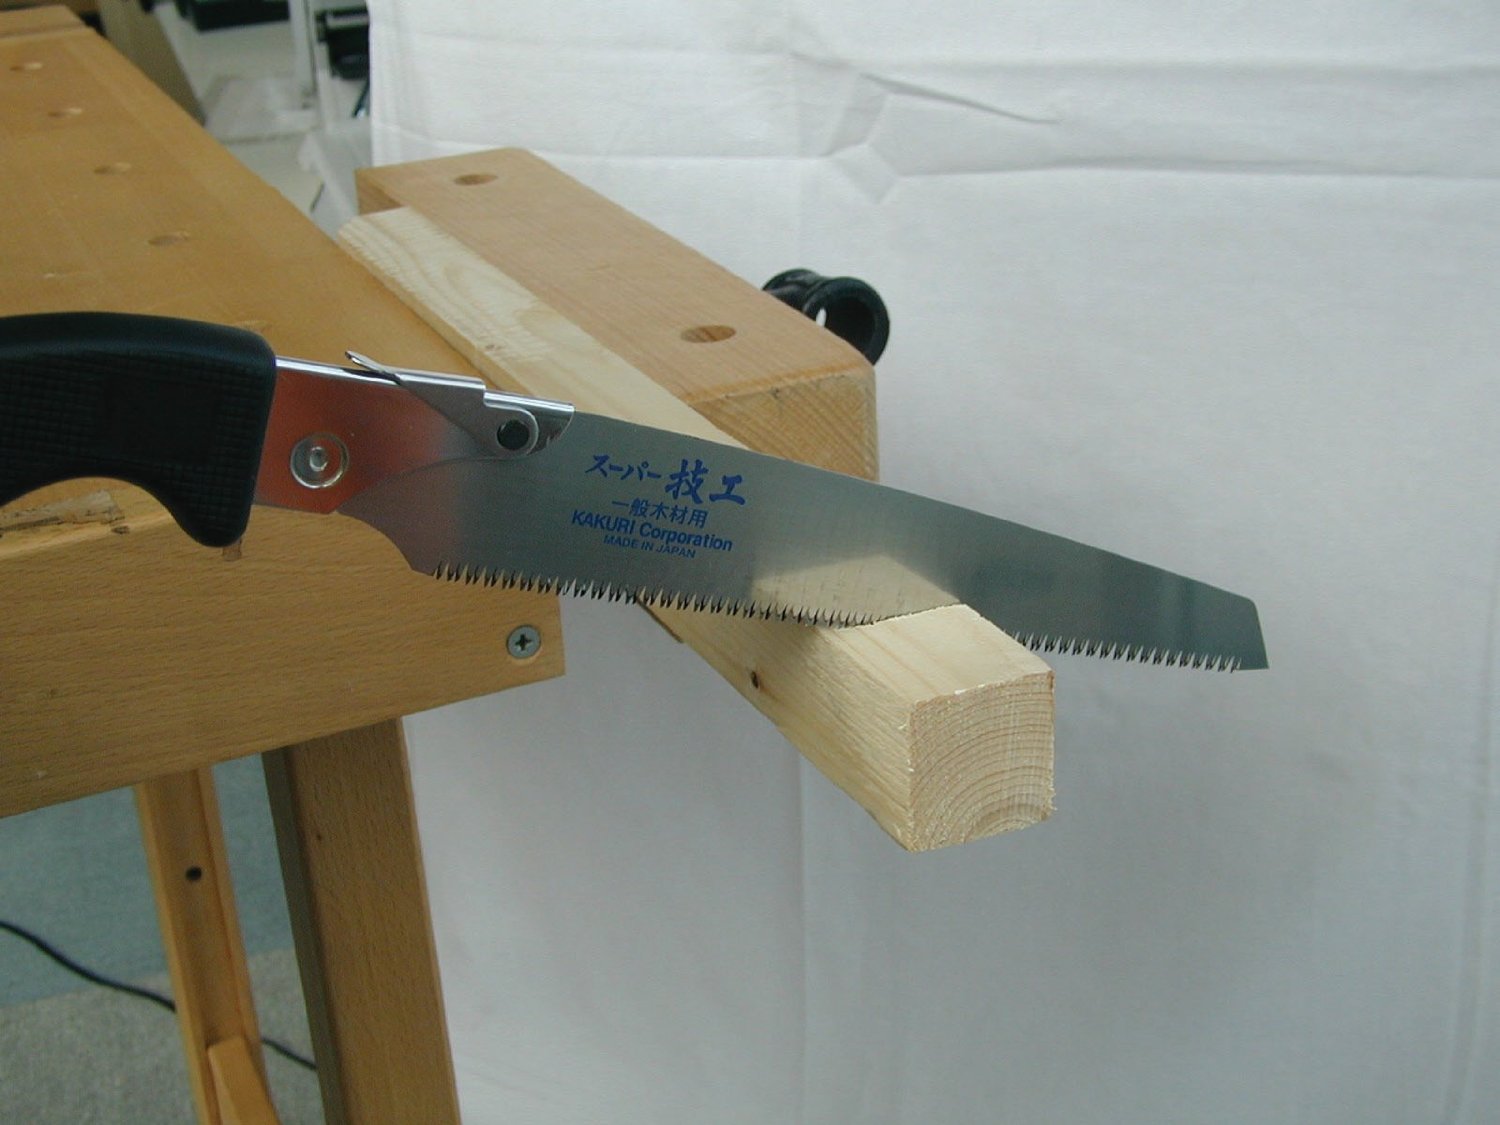 KAKURI スーパー技工 替刃式鋸 210mm 本体 一般木材用 プラケース入 